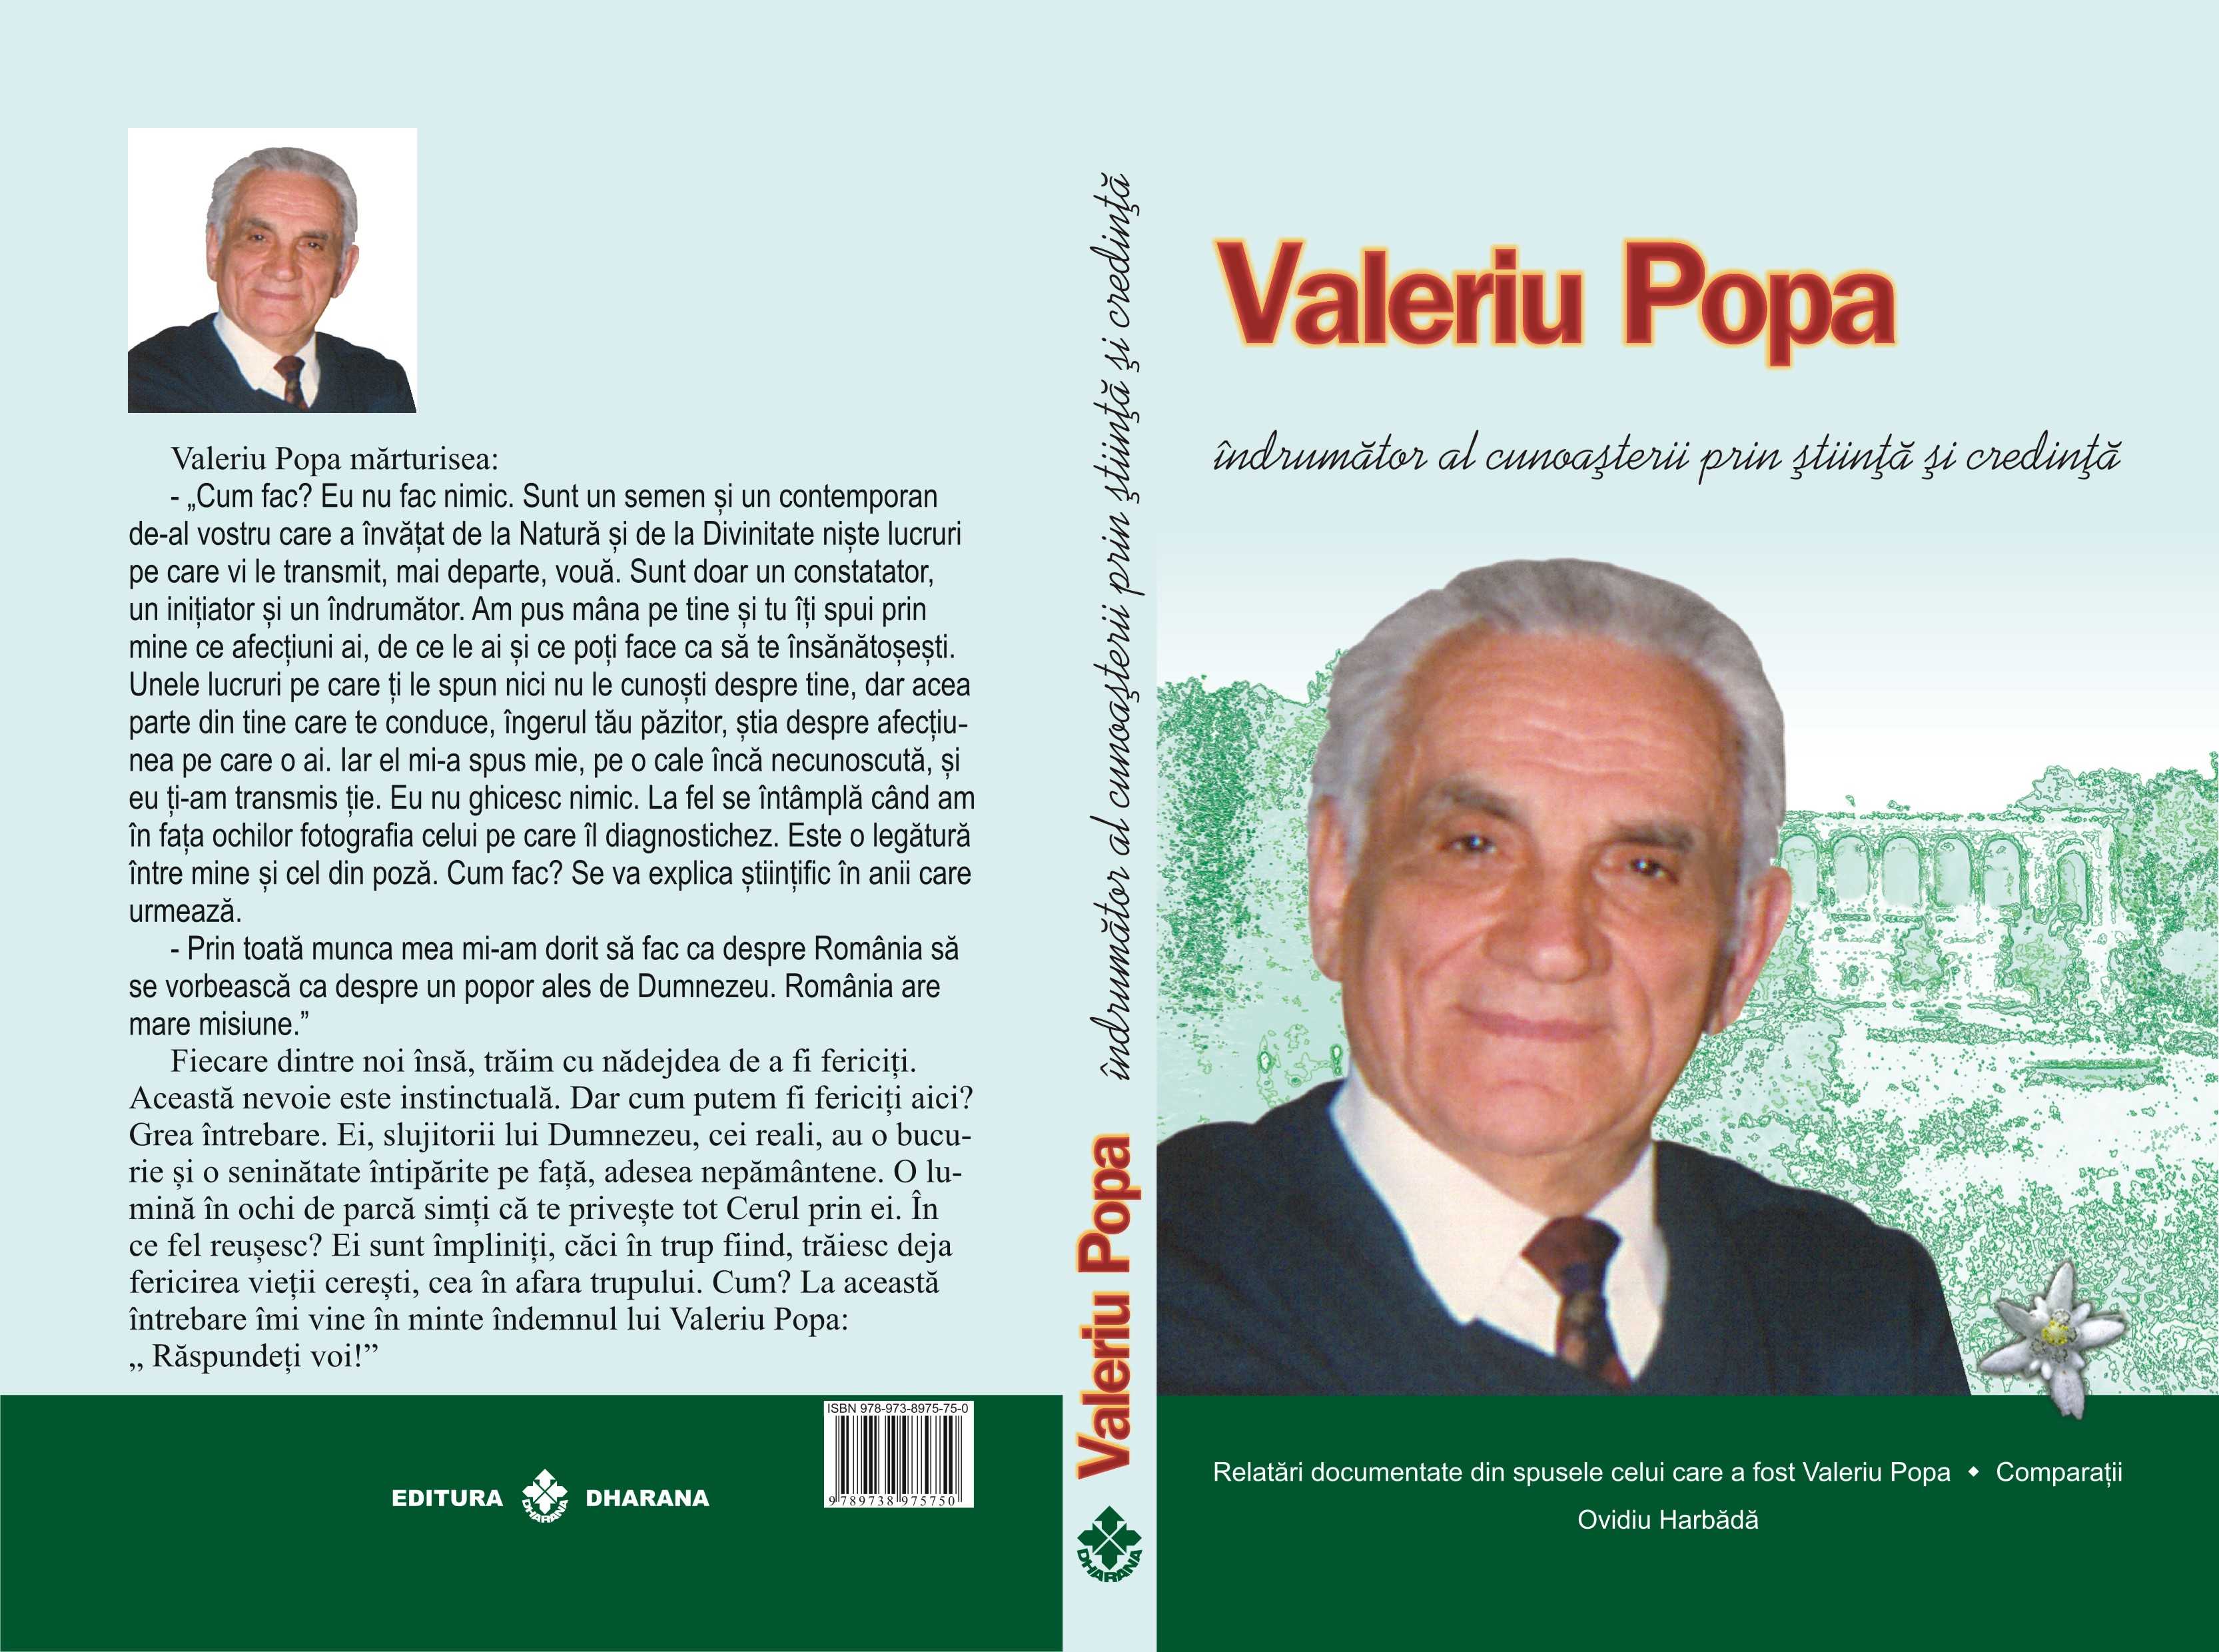 Marturii si Cazuri tratate cu regimul lui Valeriu Popa